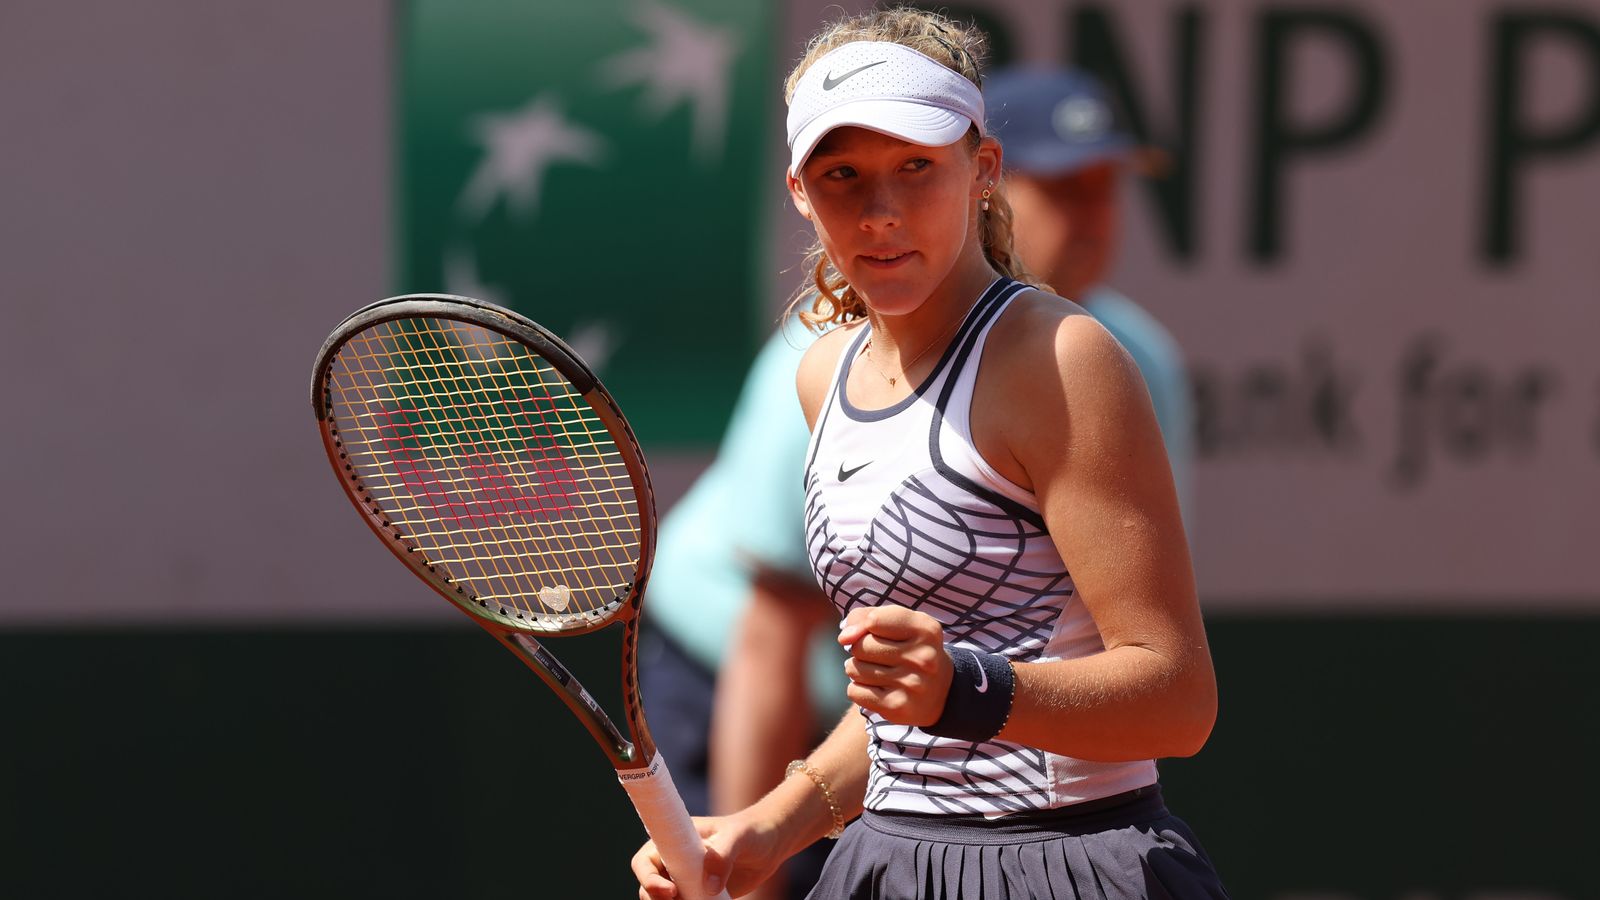 Abierto de Francia: la estrella adolescente Mirra Andreeva cree que Andy Murray podría ser su amuleto de la suerte en Roland Garros |  Noticias de tenis